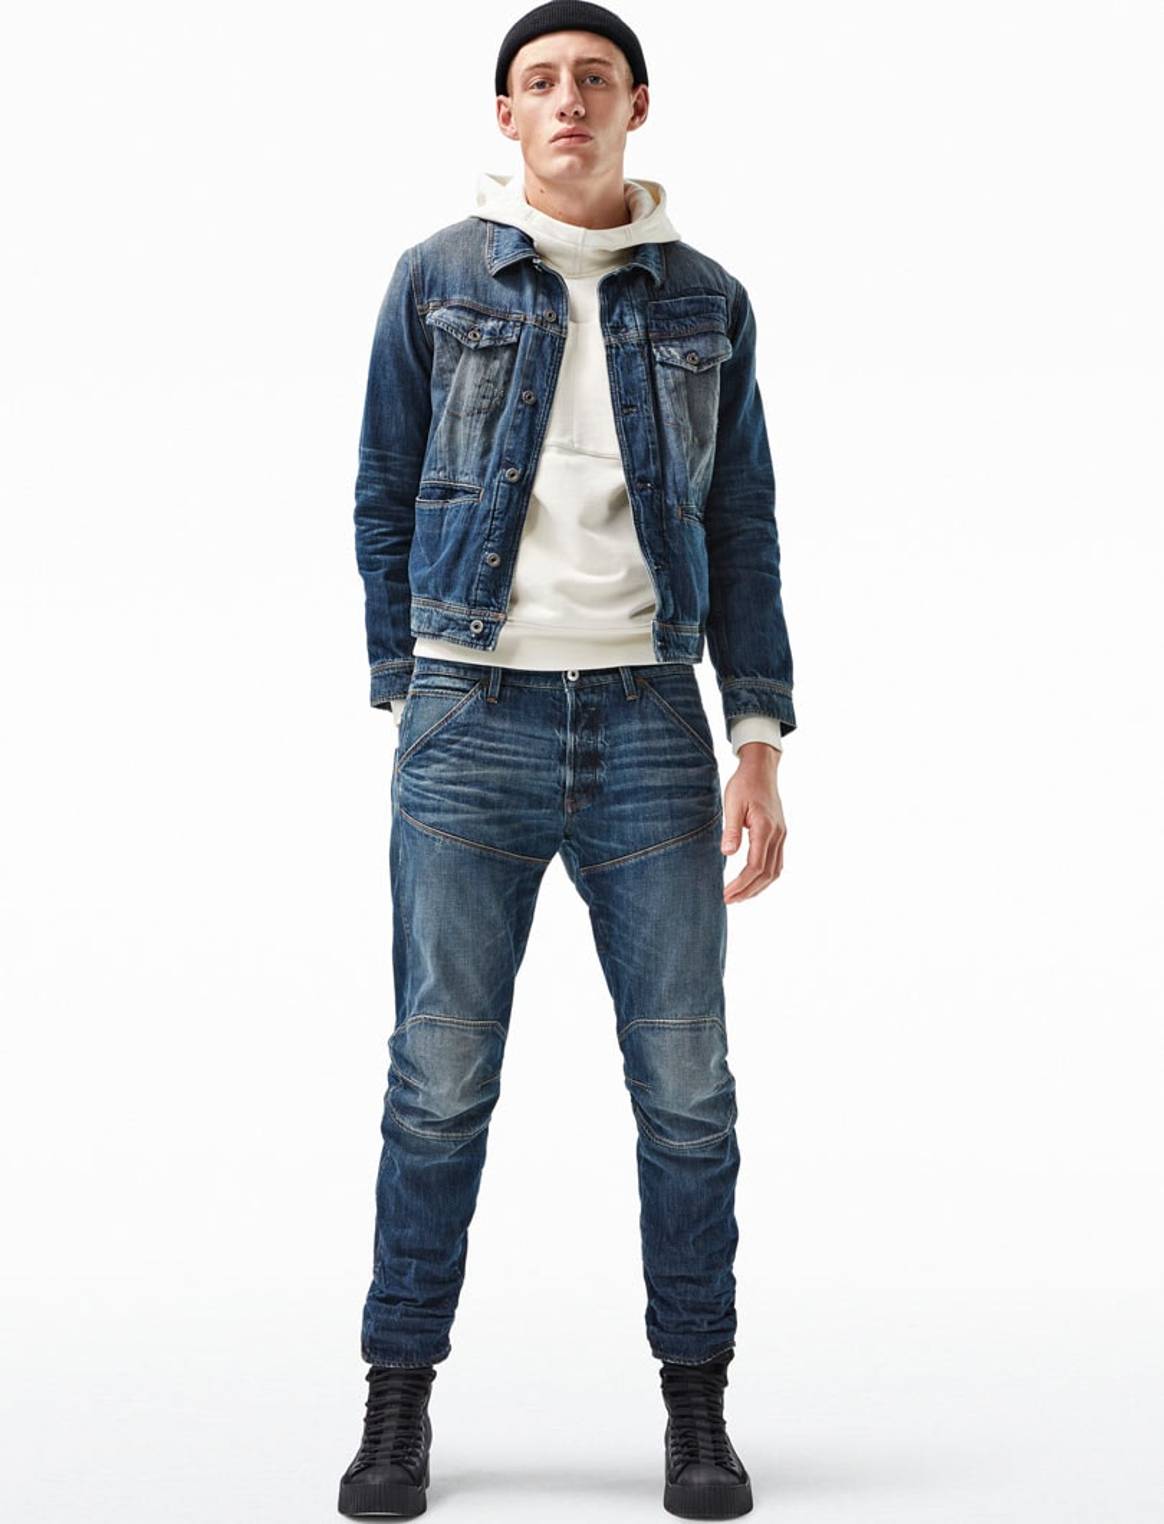 G-Star lanceert 'meest duurzame jeans ooit'